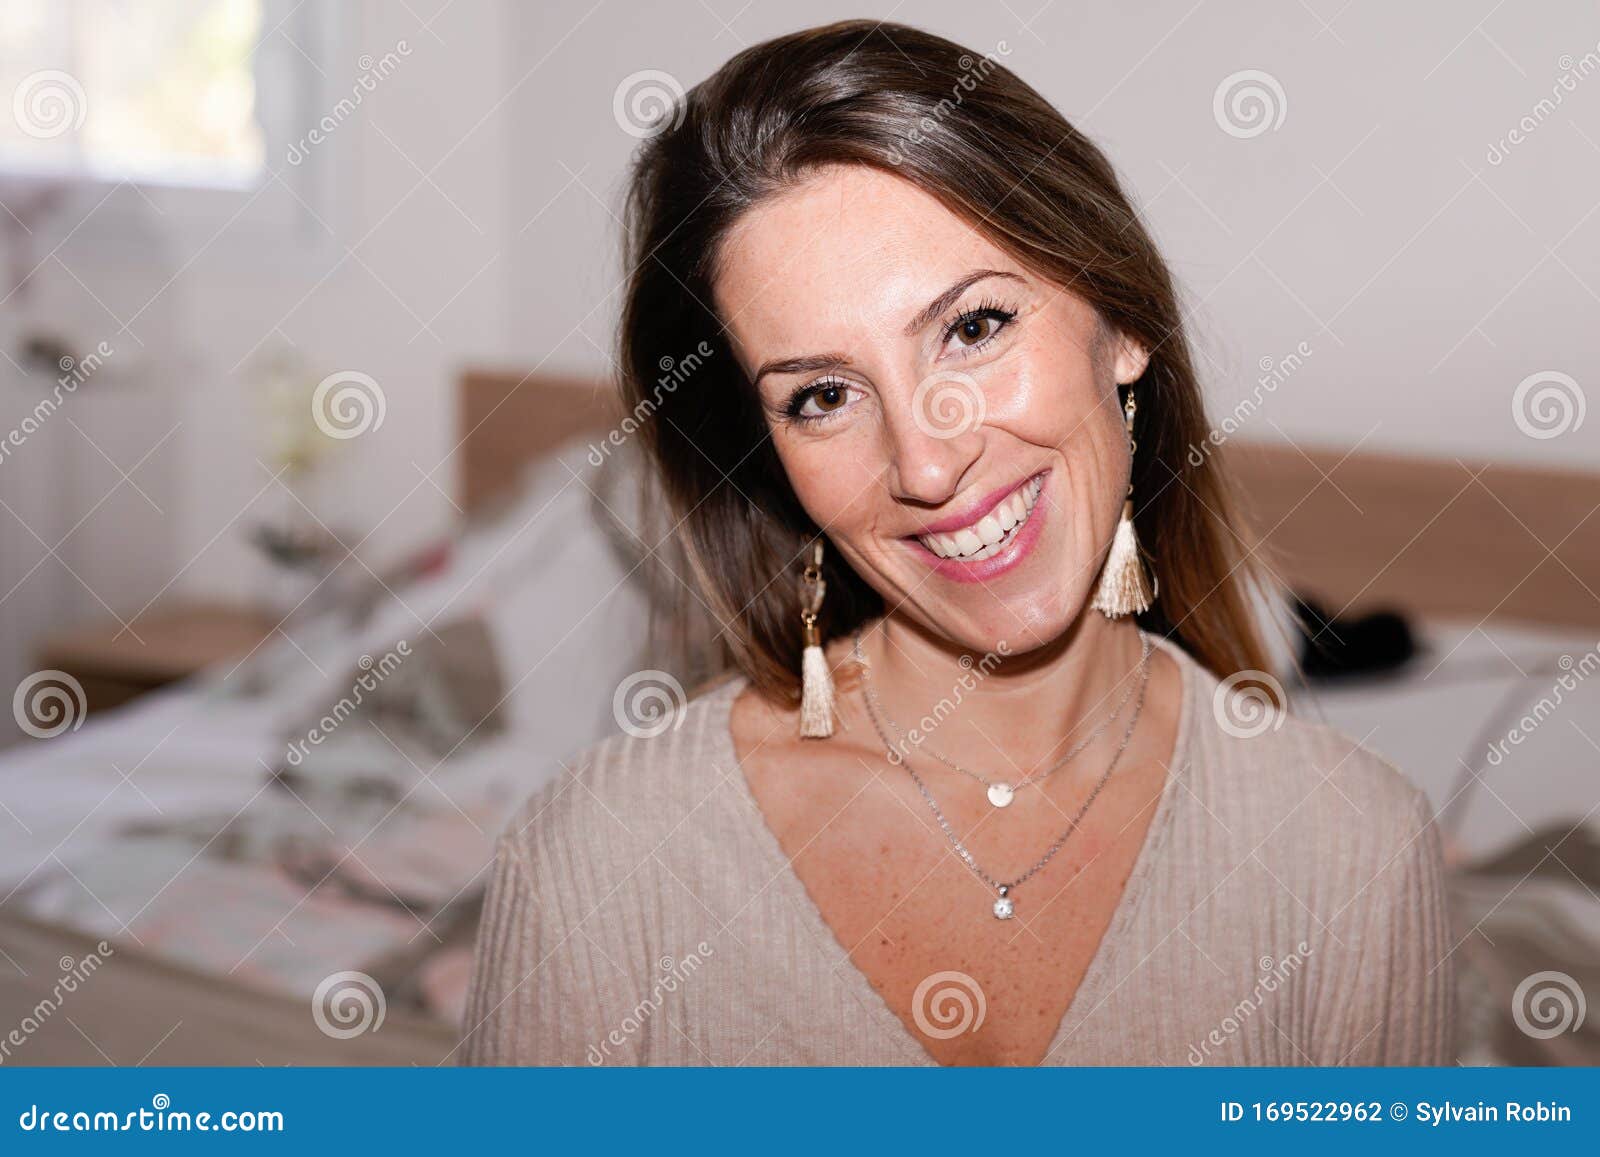 Zelfrespect huurder Mislukking Portret Van Een Mooie 30-jarige Blonde Vrouw in De Slaapkamer Stock Foto -  Image of leuk, jaar: 169522962